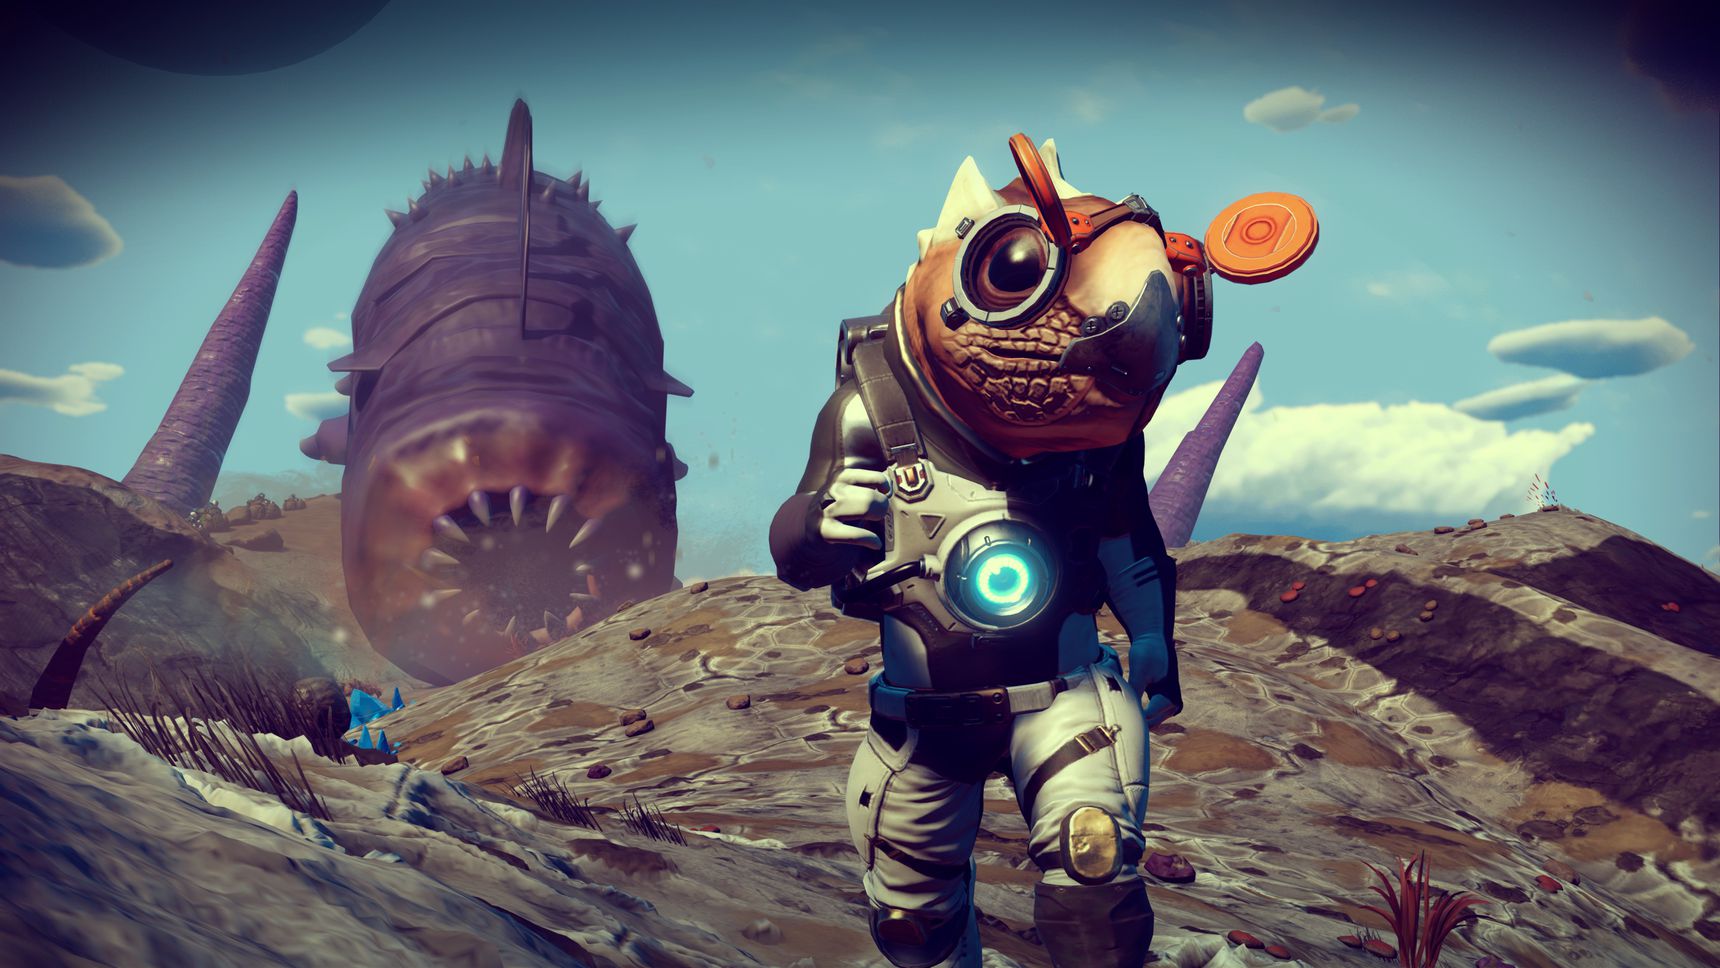 Um explorador espacial na superfície de planeta alienígena, sendo perseguido por uma minhoca gigante